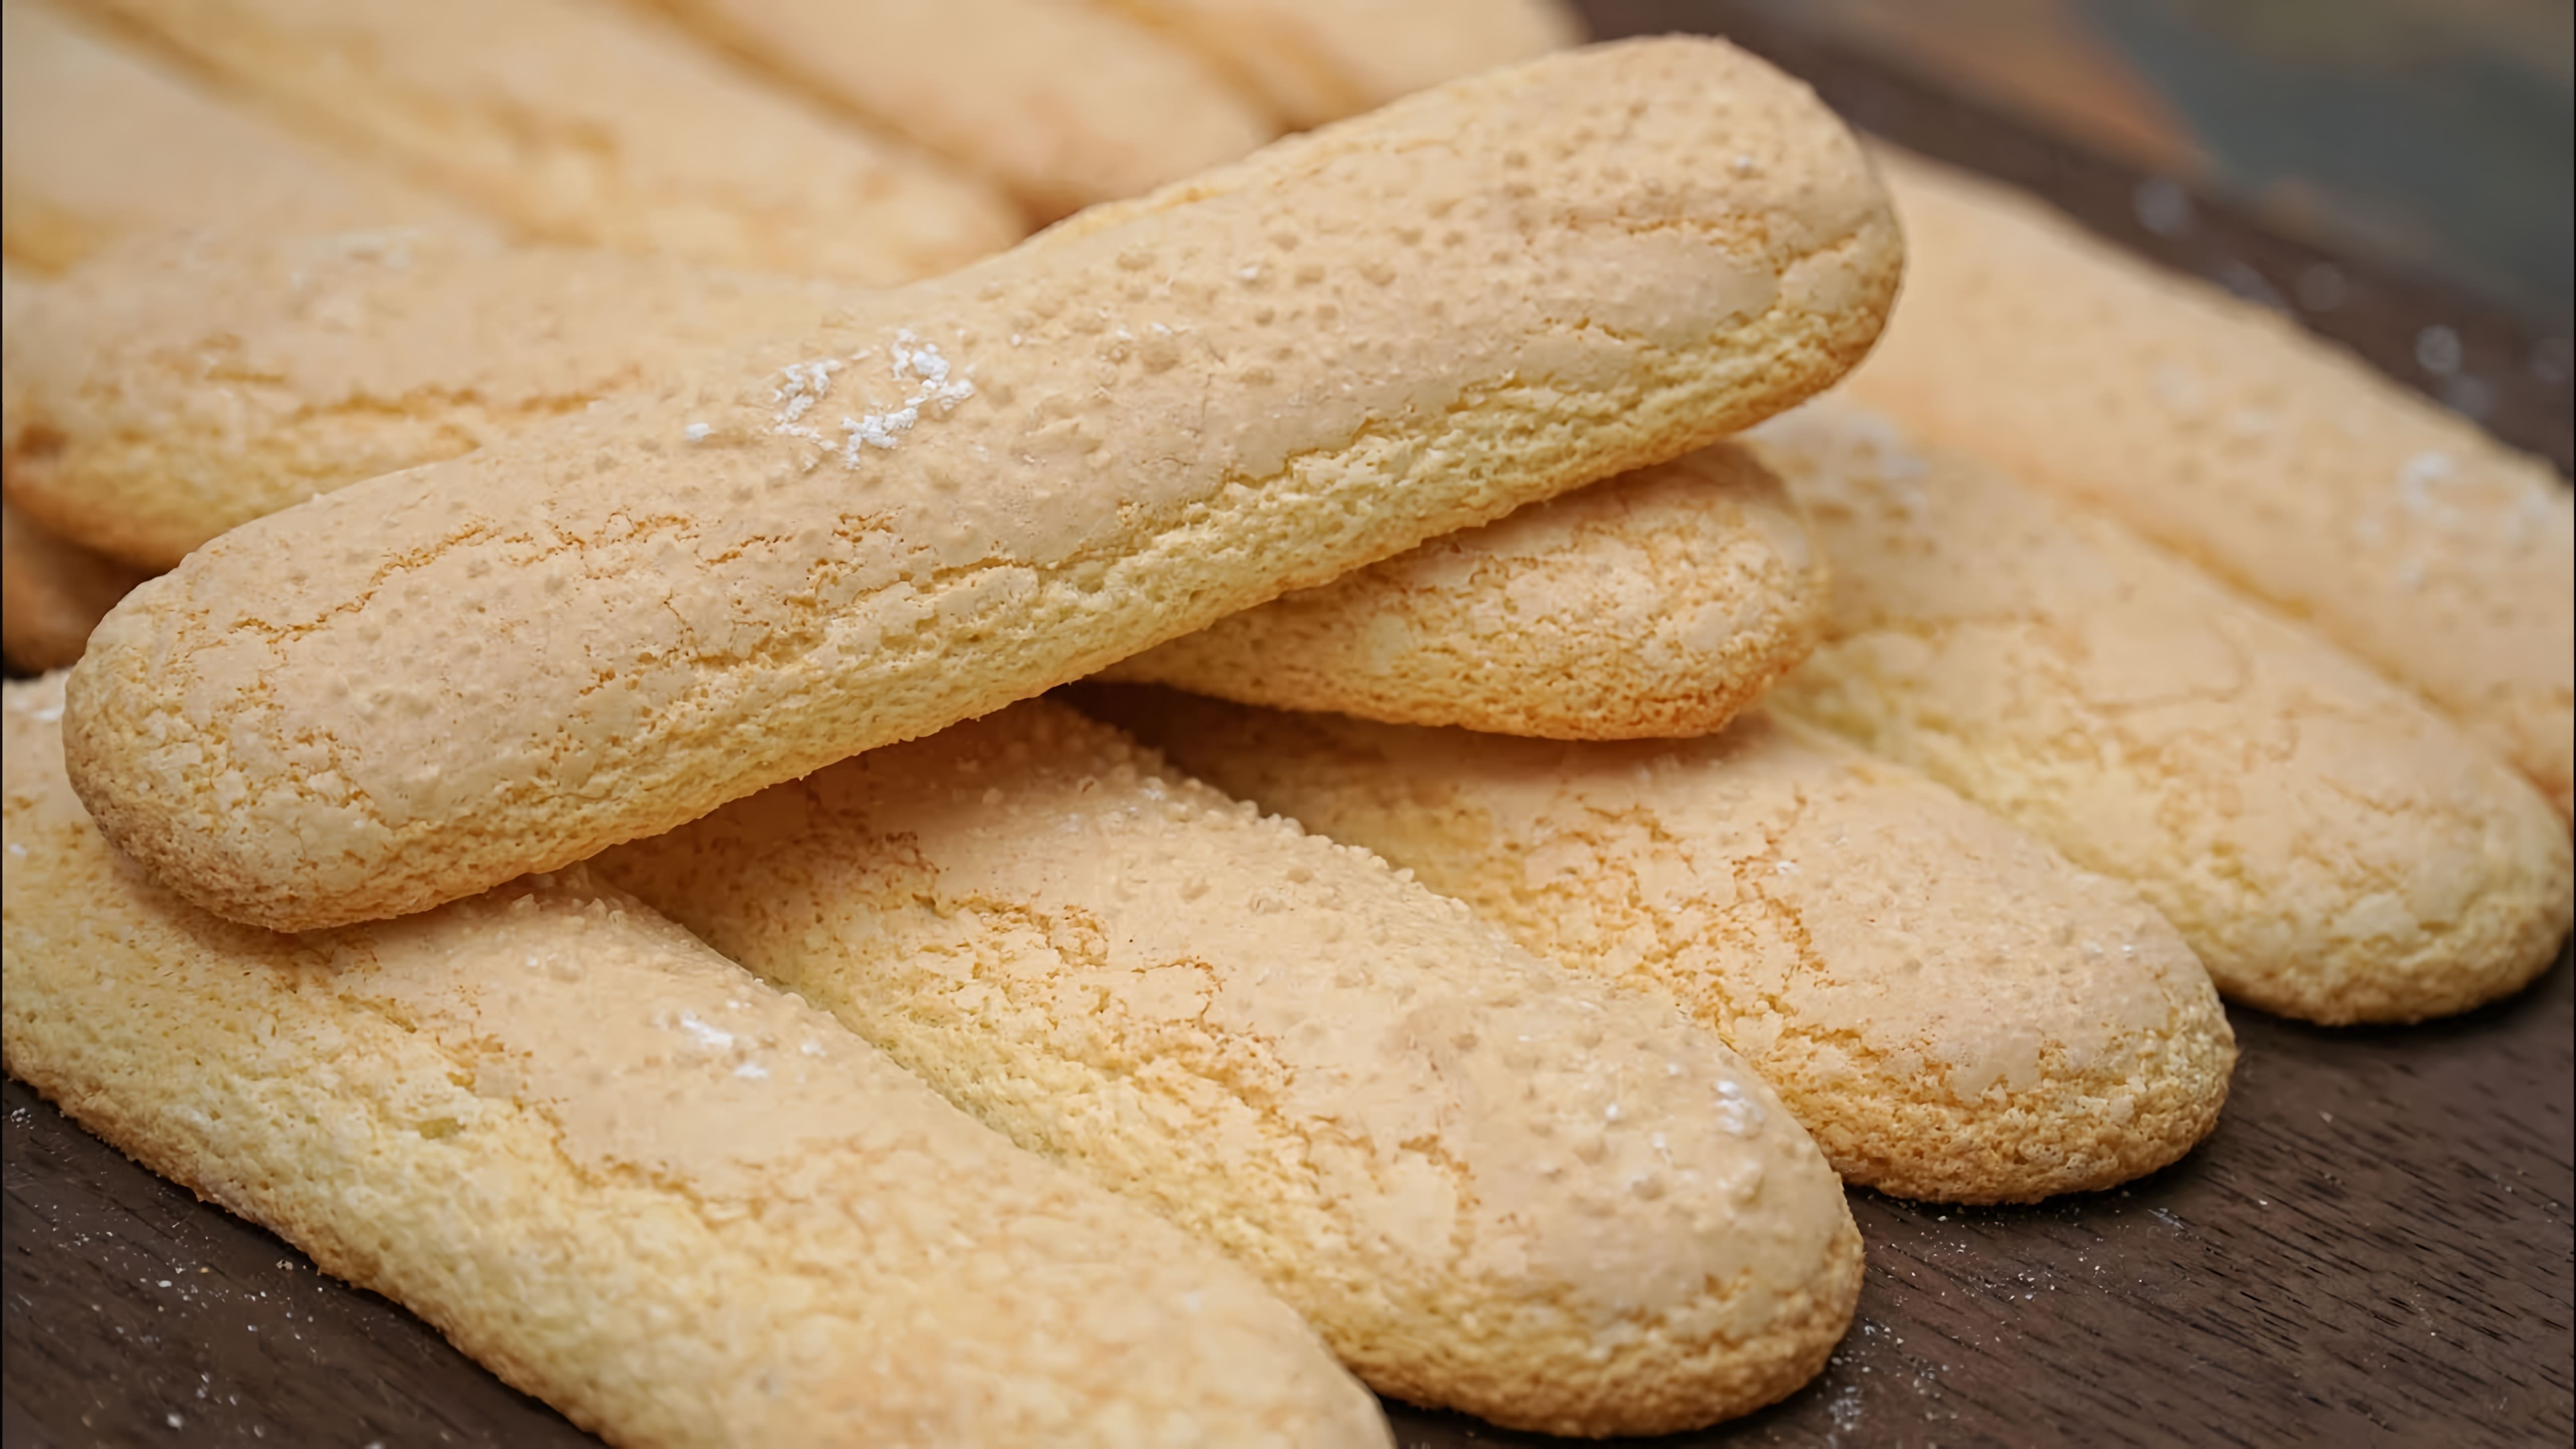 Видео рецепт печенья савоярди, также известного как леди-пальчики, которые являются легкими и печенье-подобными пирожными